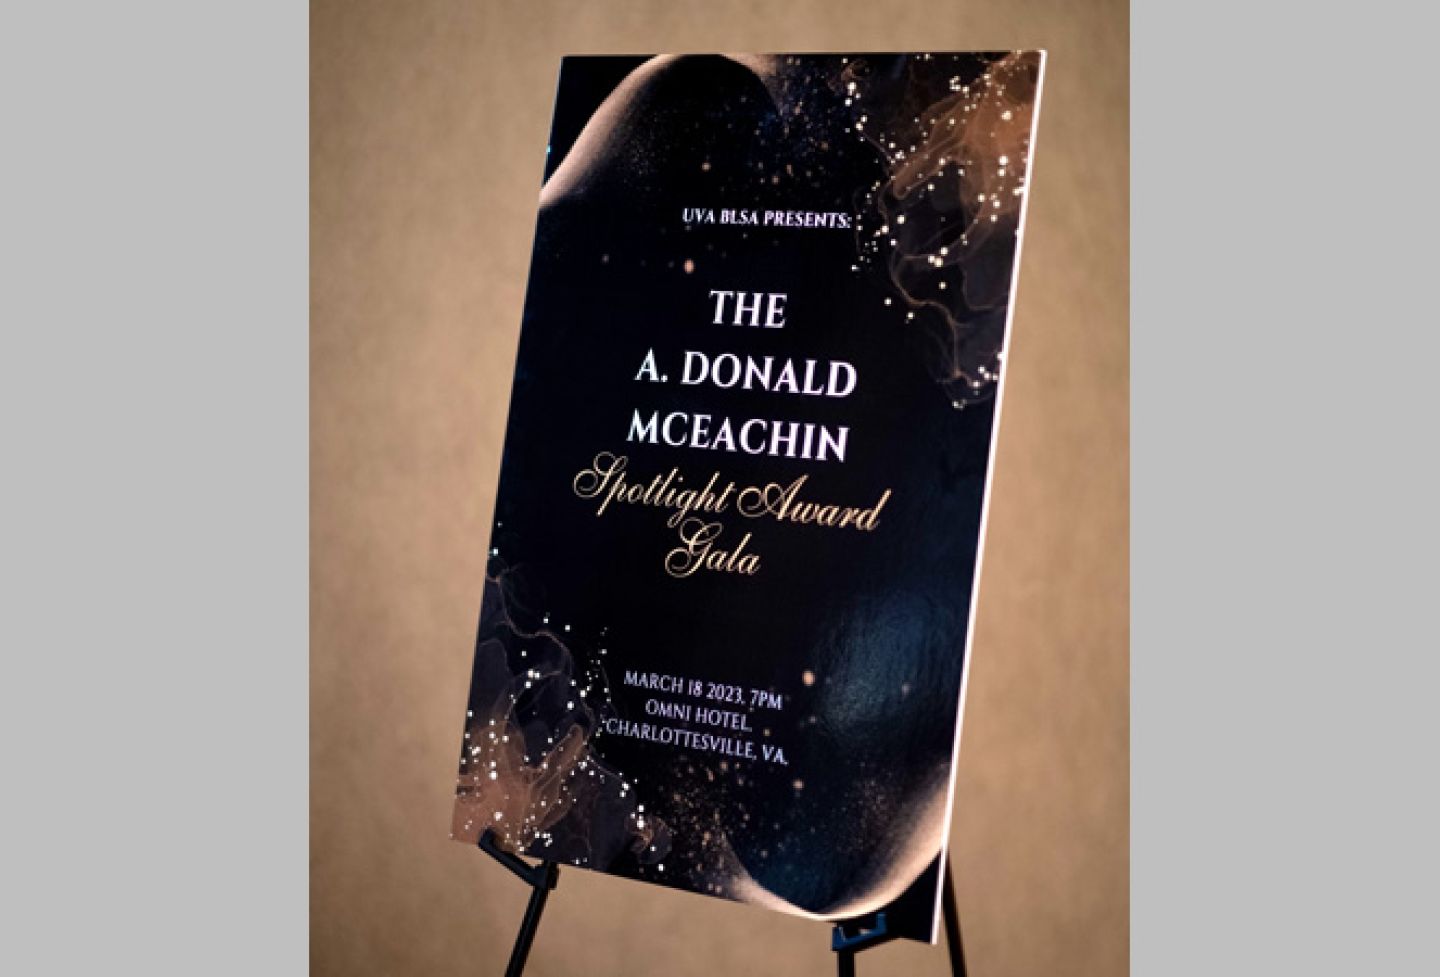 "The A. Donald McEachin Spotlight Award Gala"